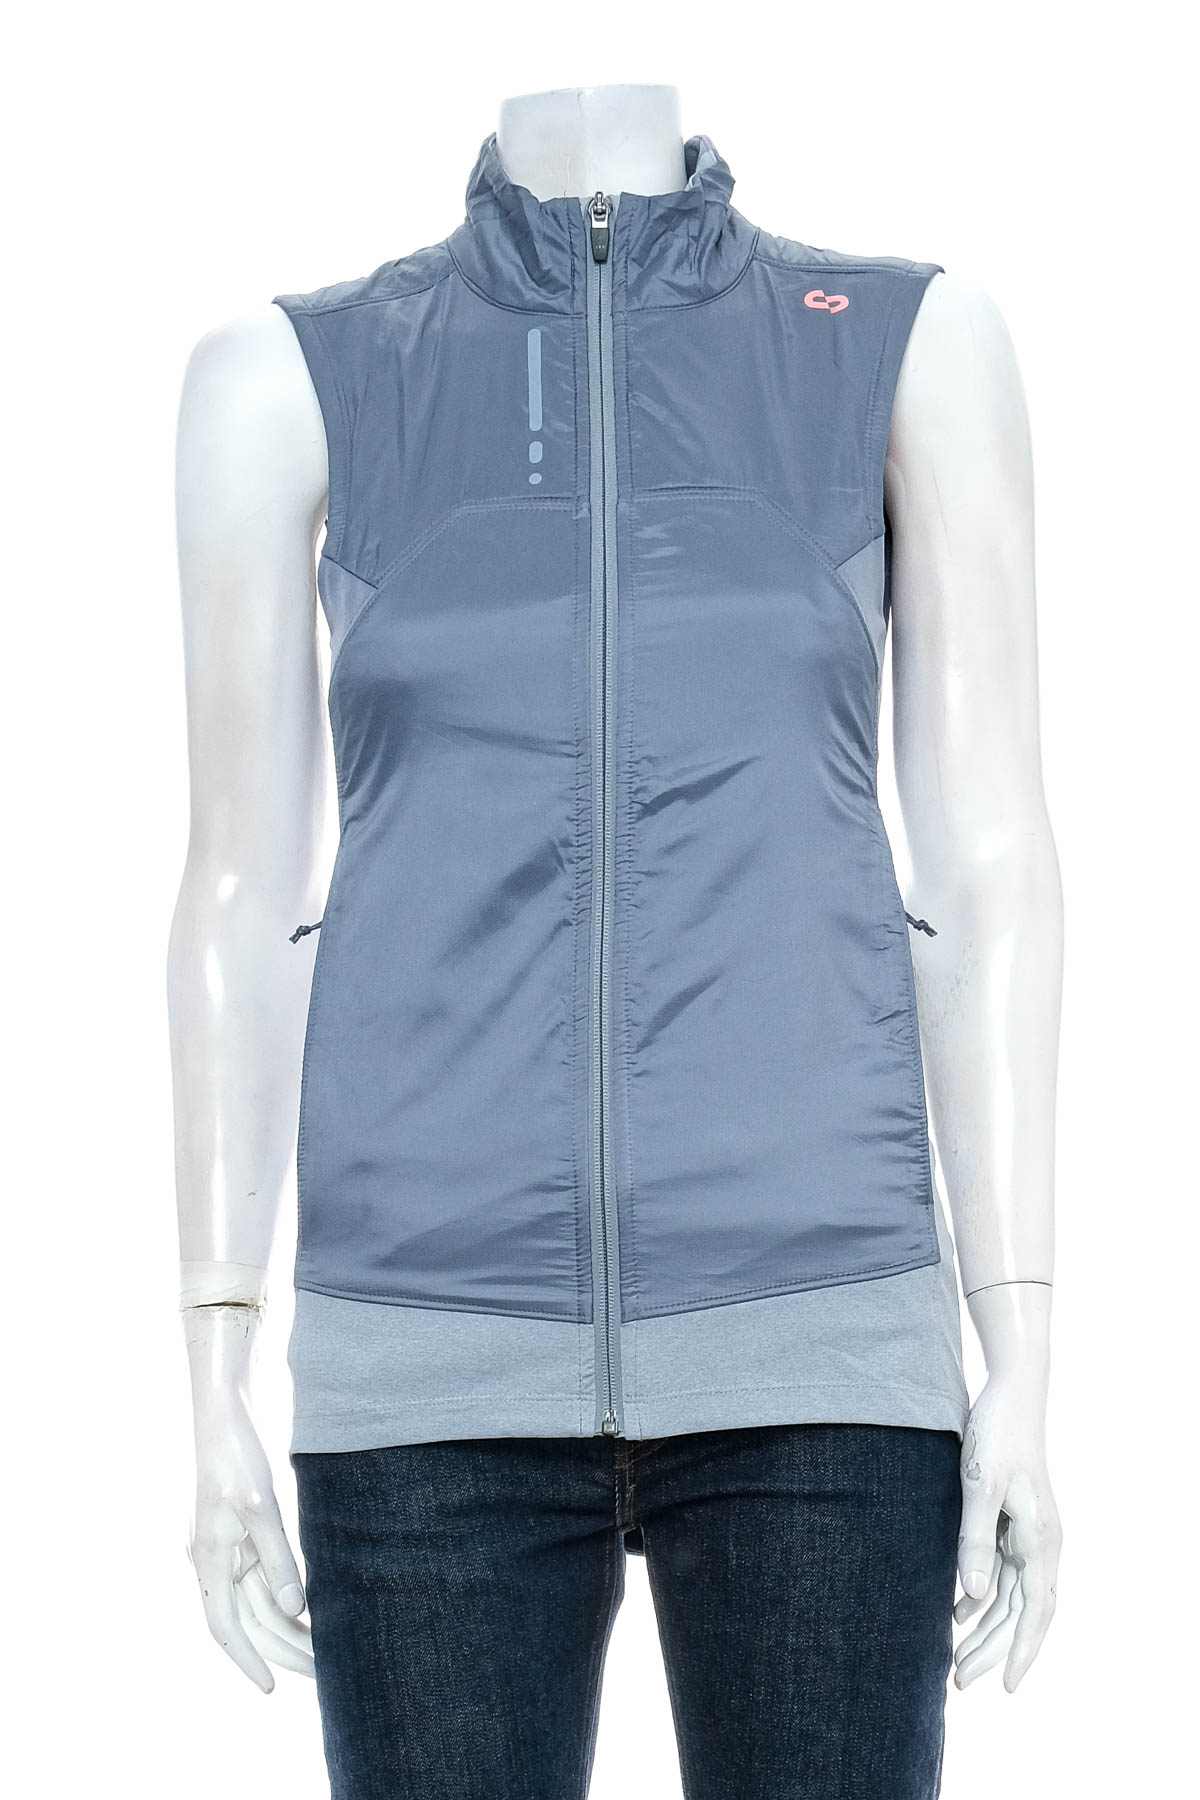 Women's vest - OROS - 0